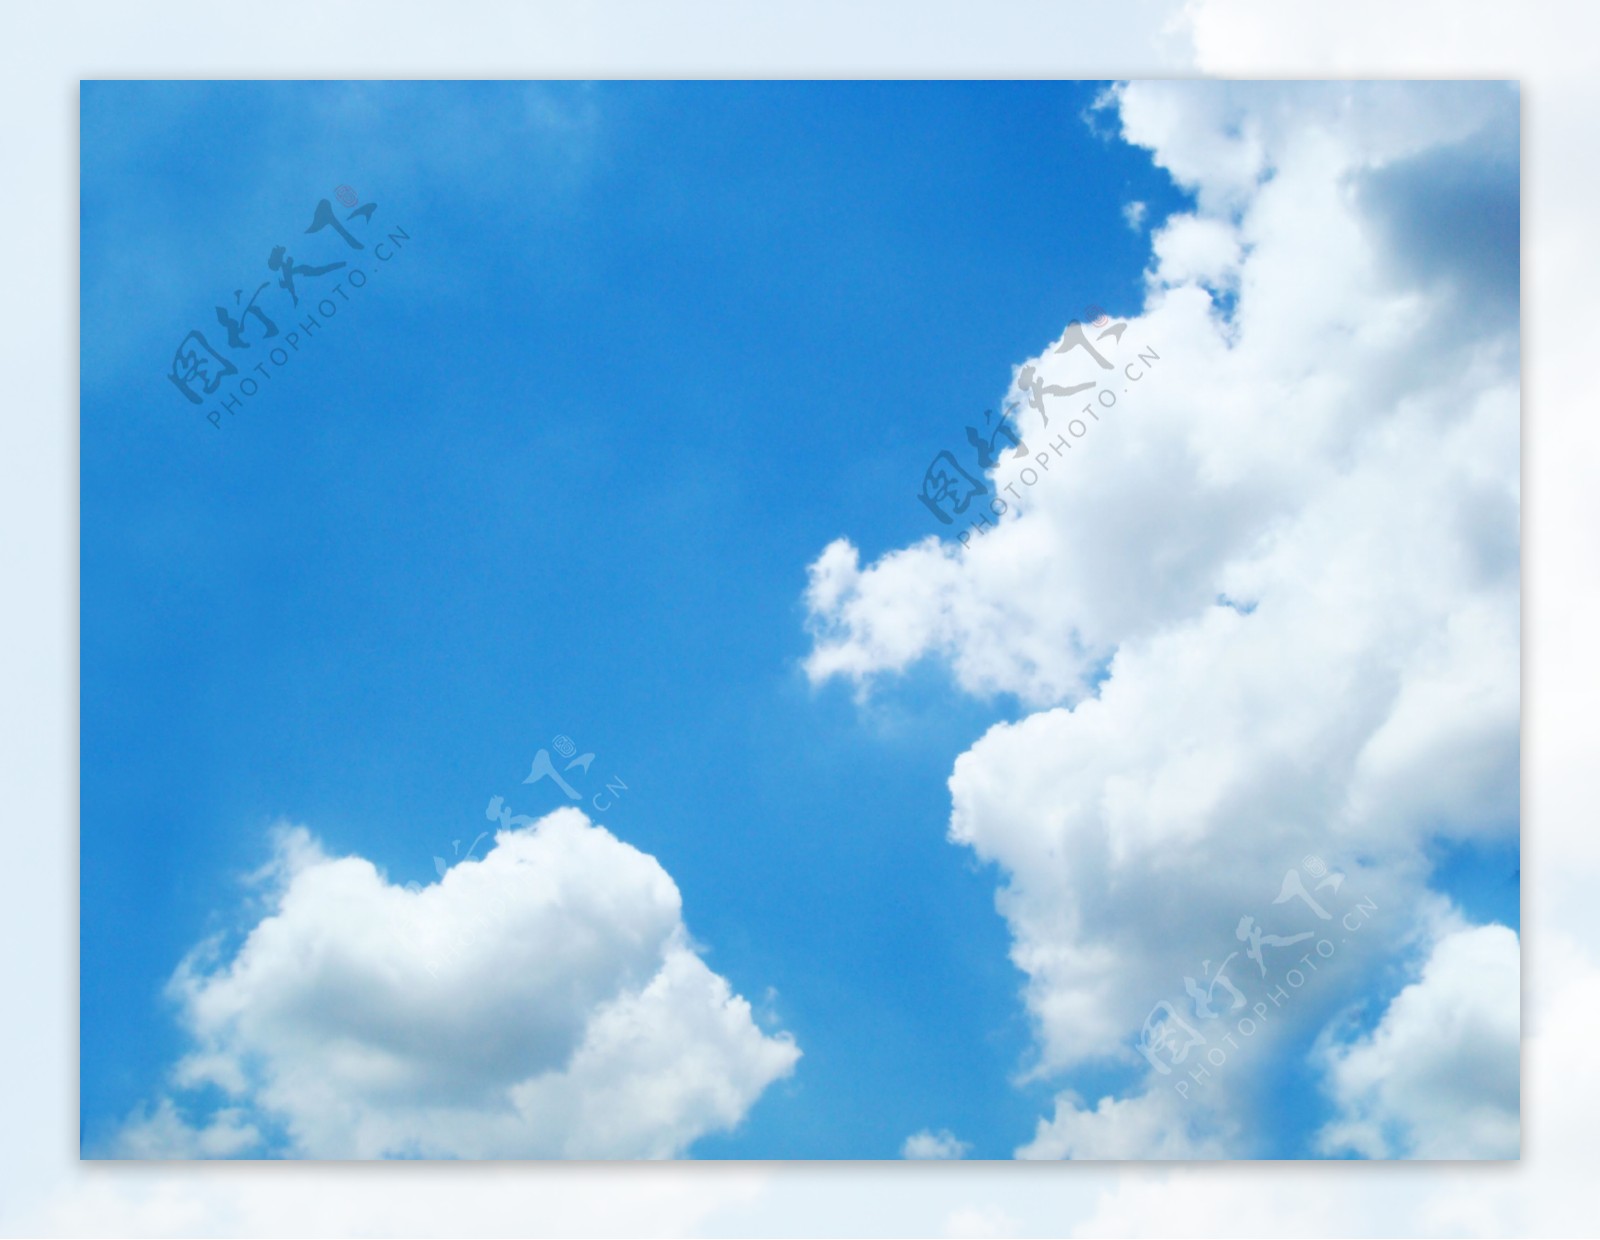 漂亮的天空影楼背景抠图素材003免费下载